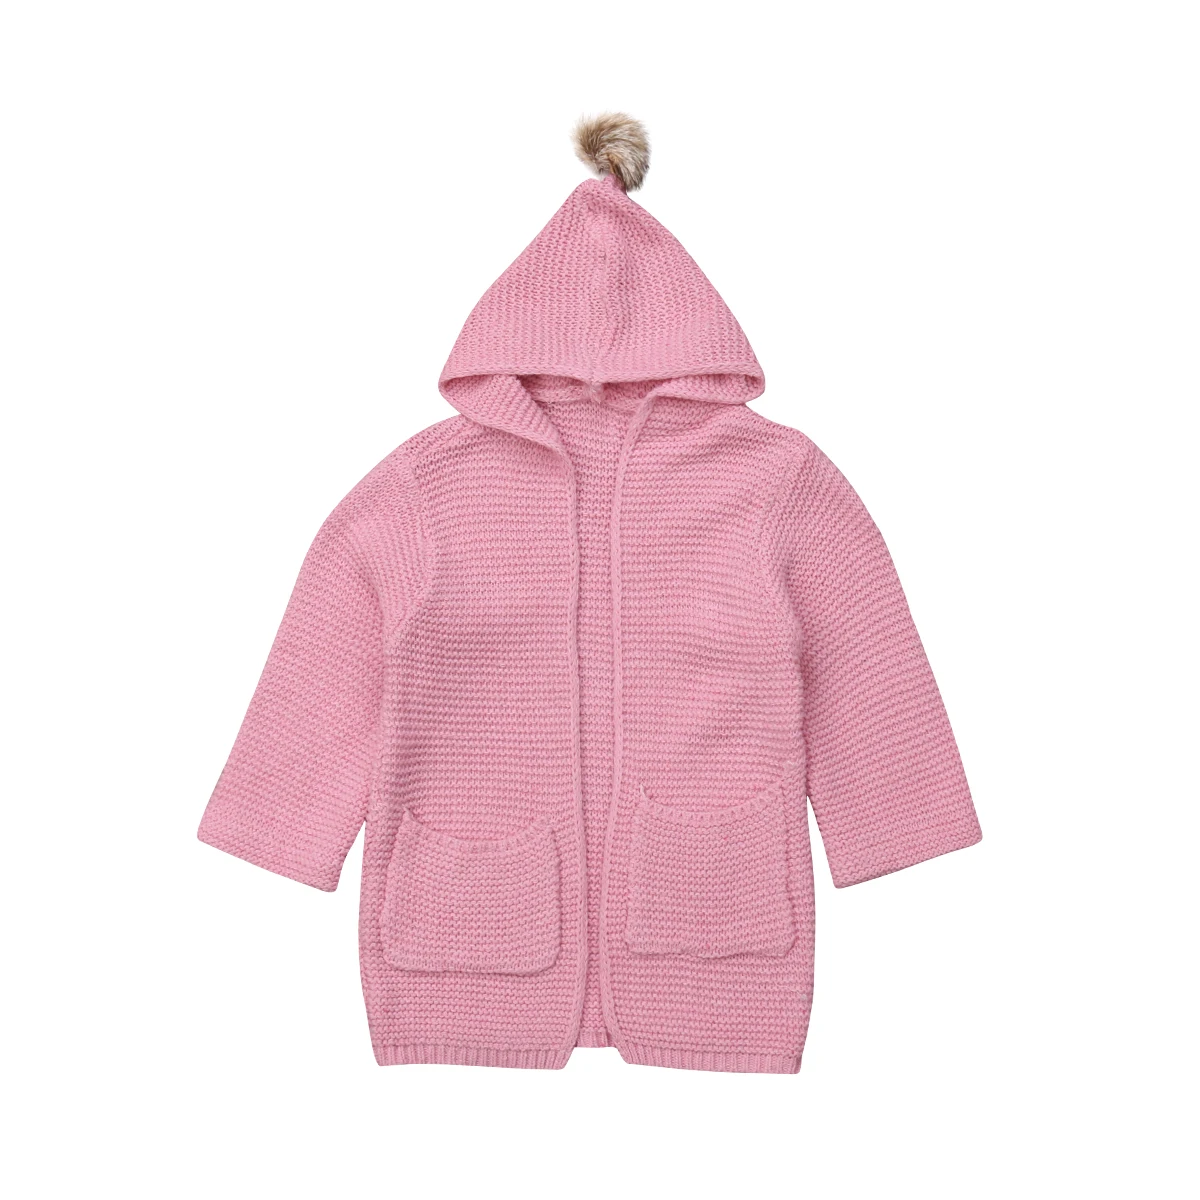 Multitrust модный теплый детский вязаный свитер розового, красного и бежевого цвета для маленьких девочек пальто-кардиган зимняя теплая верхняя одежда